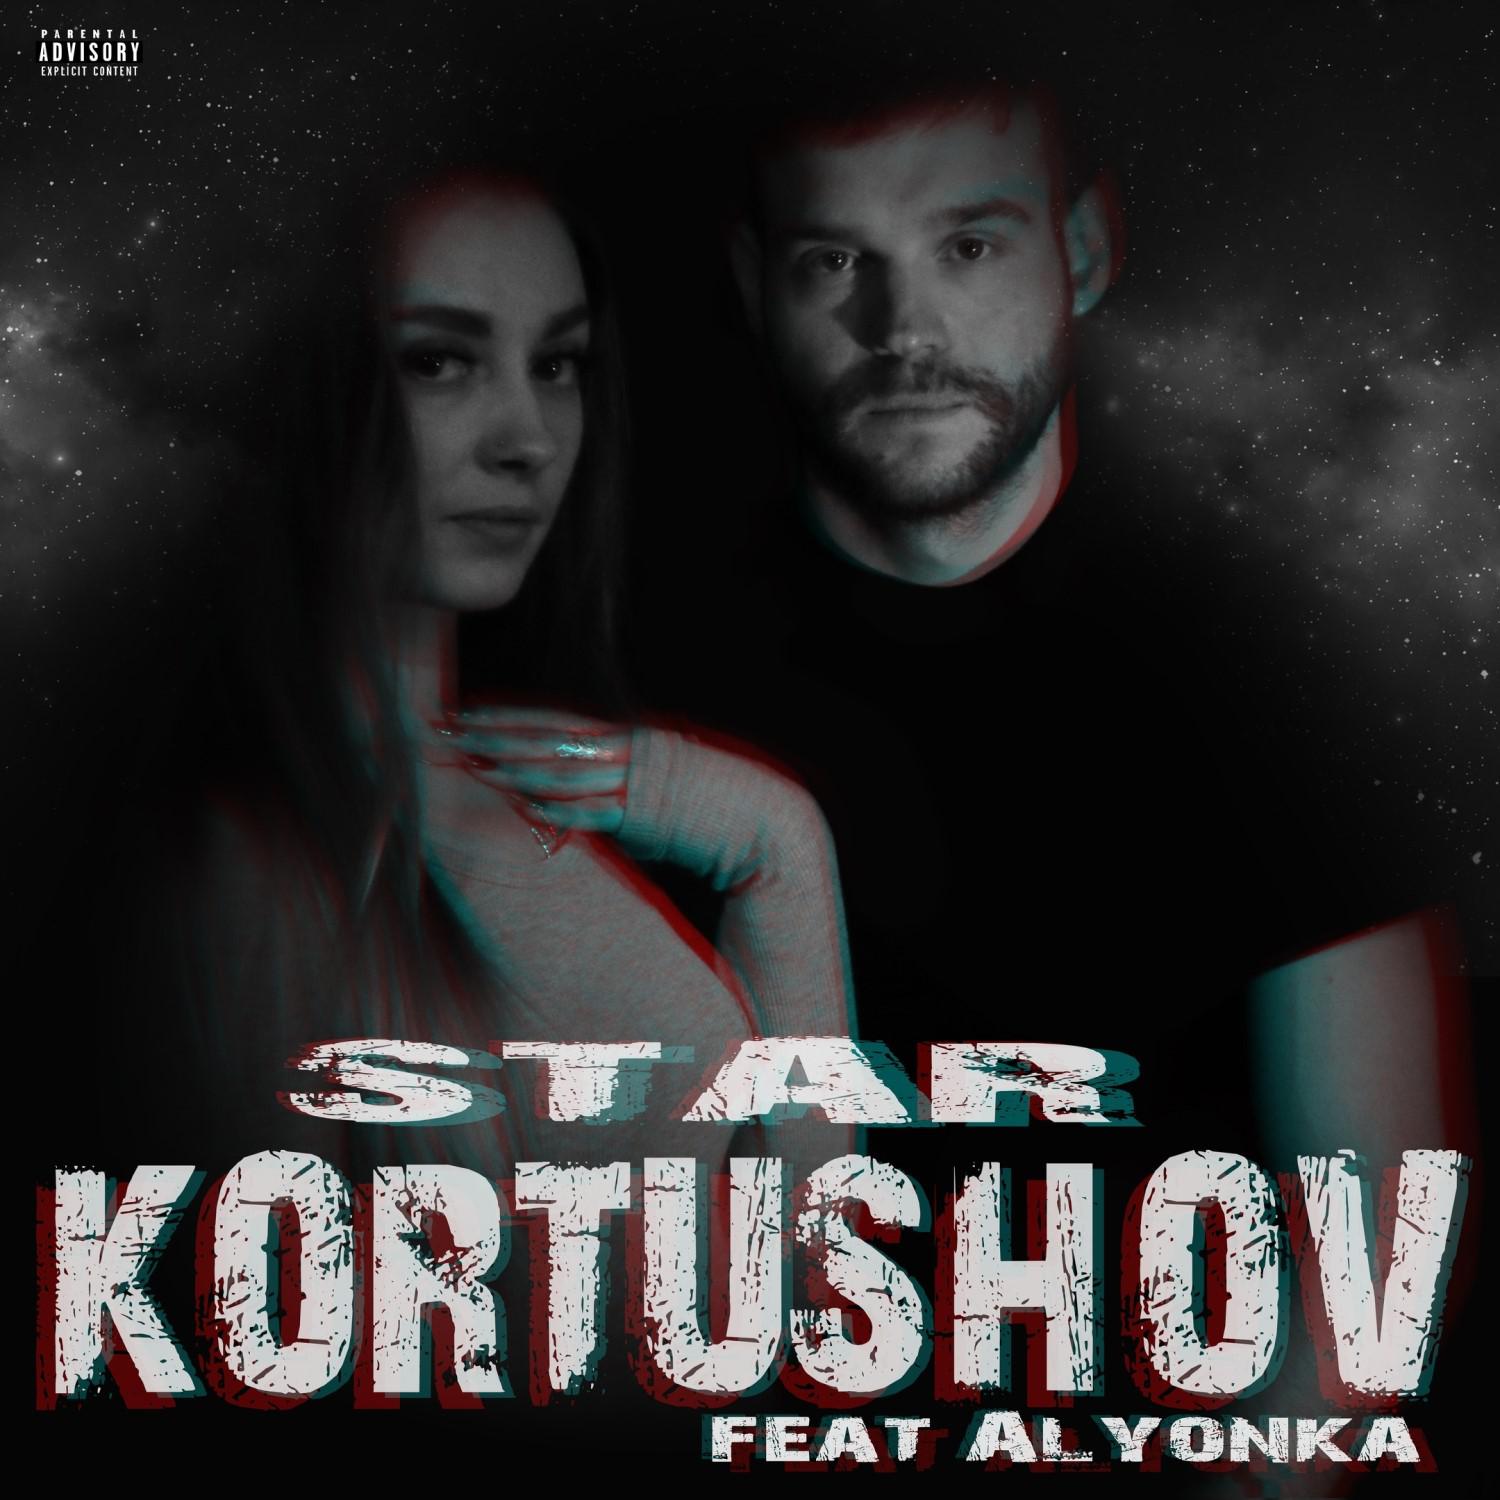 Kortushov - Star (feat. Alyonka)